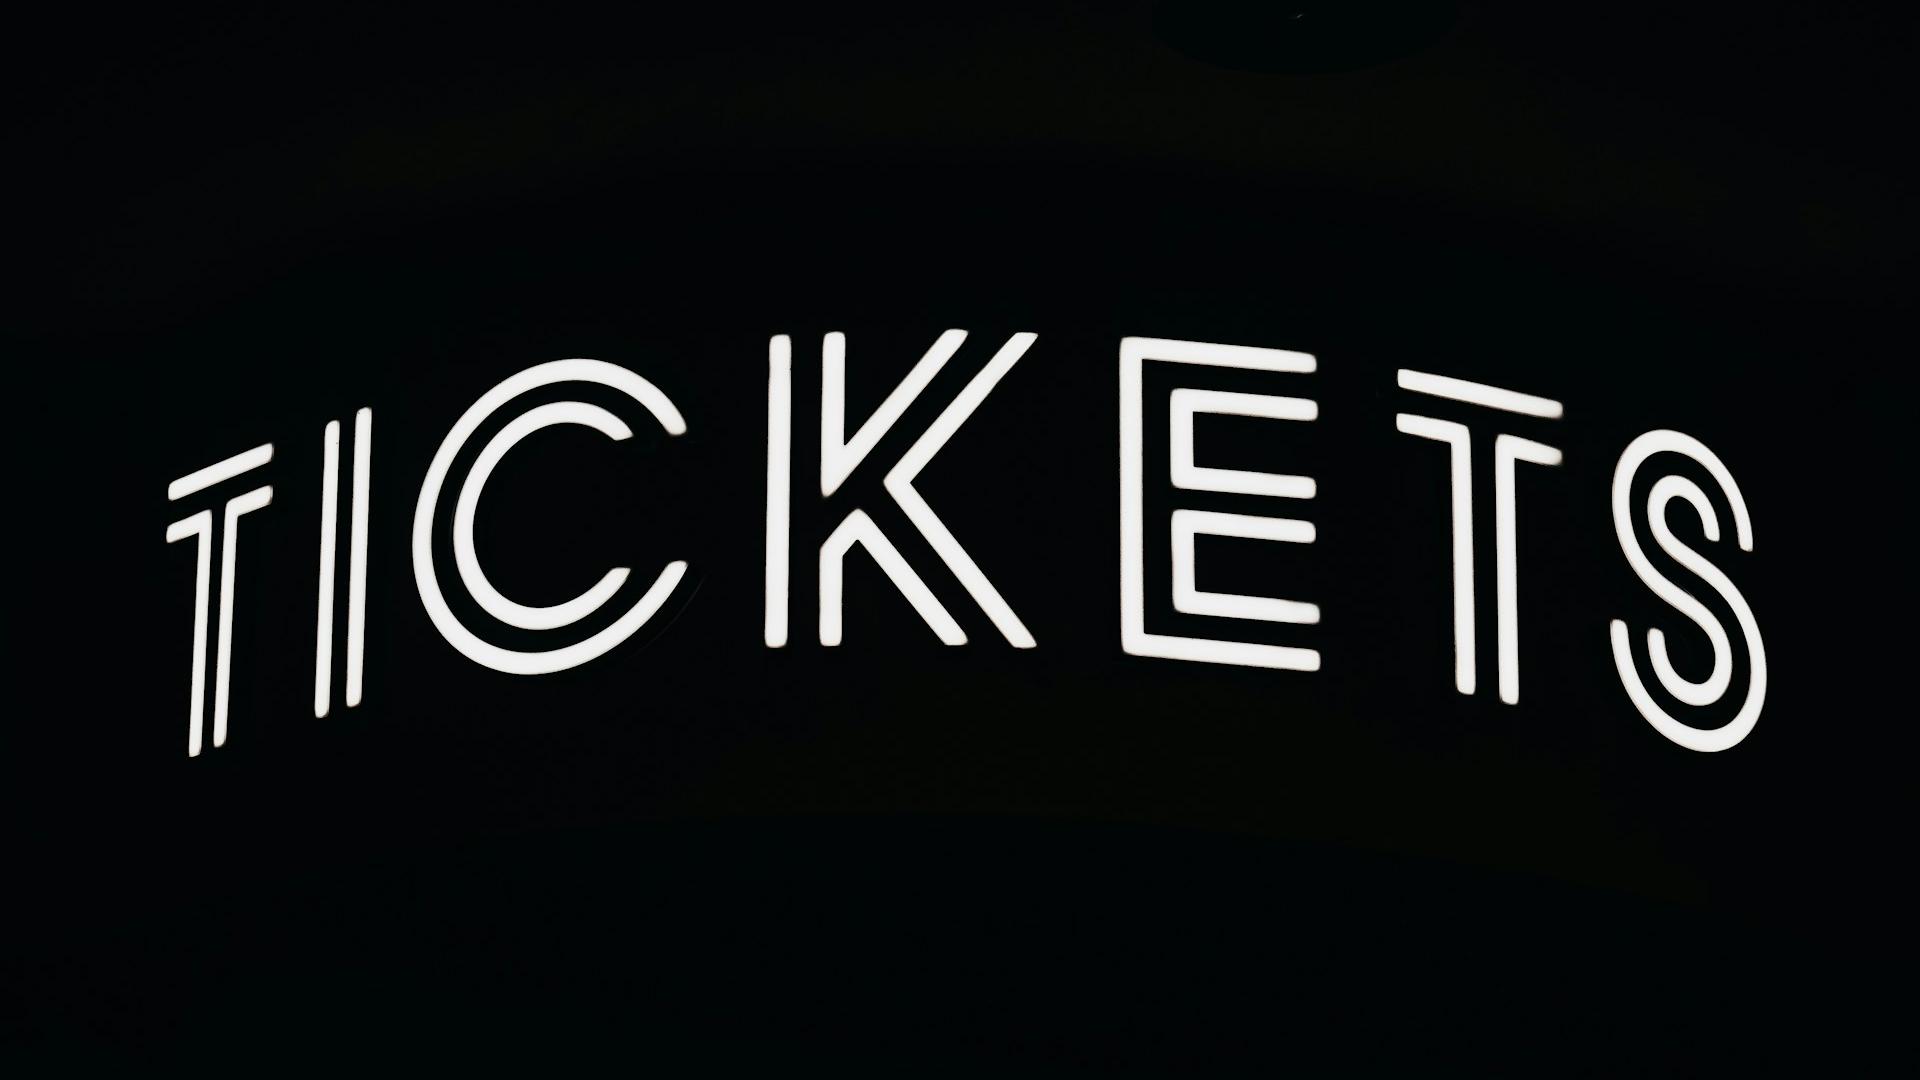 Tickets written in black background